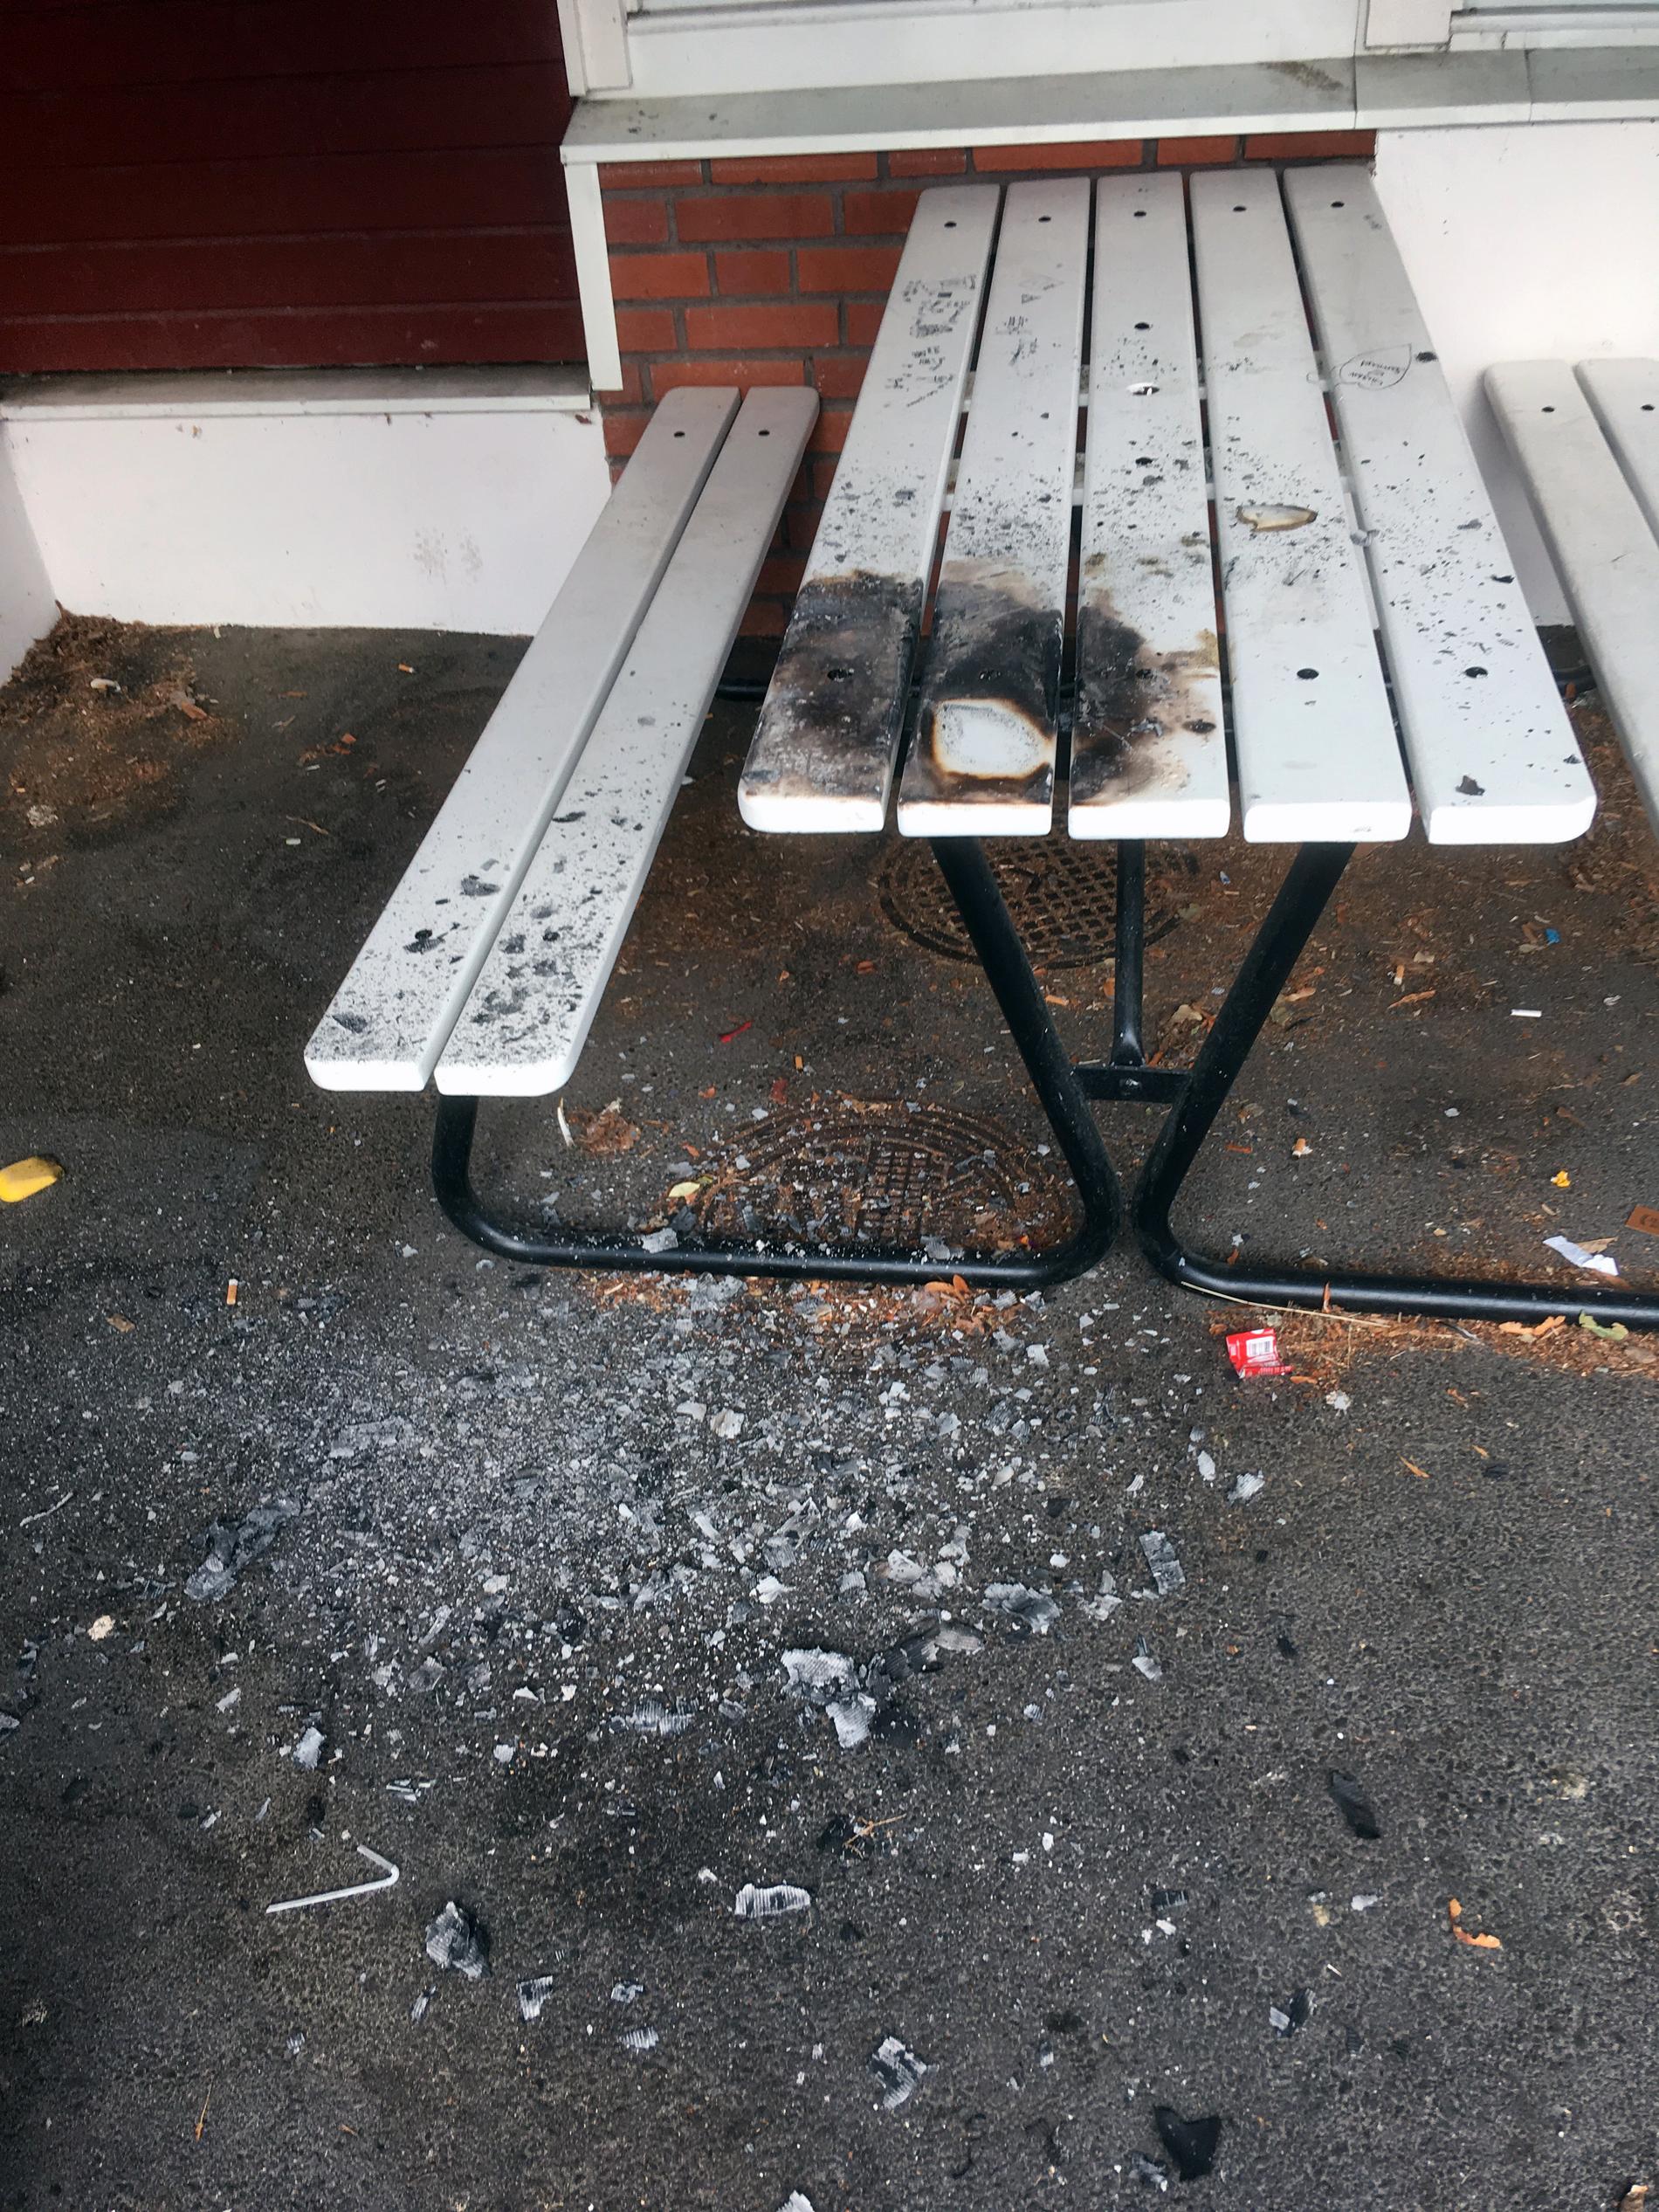 Utöver hakkorsen hade någon bränt bänkarna som står på skolgården.